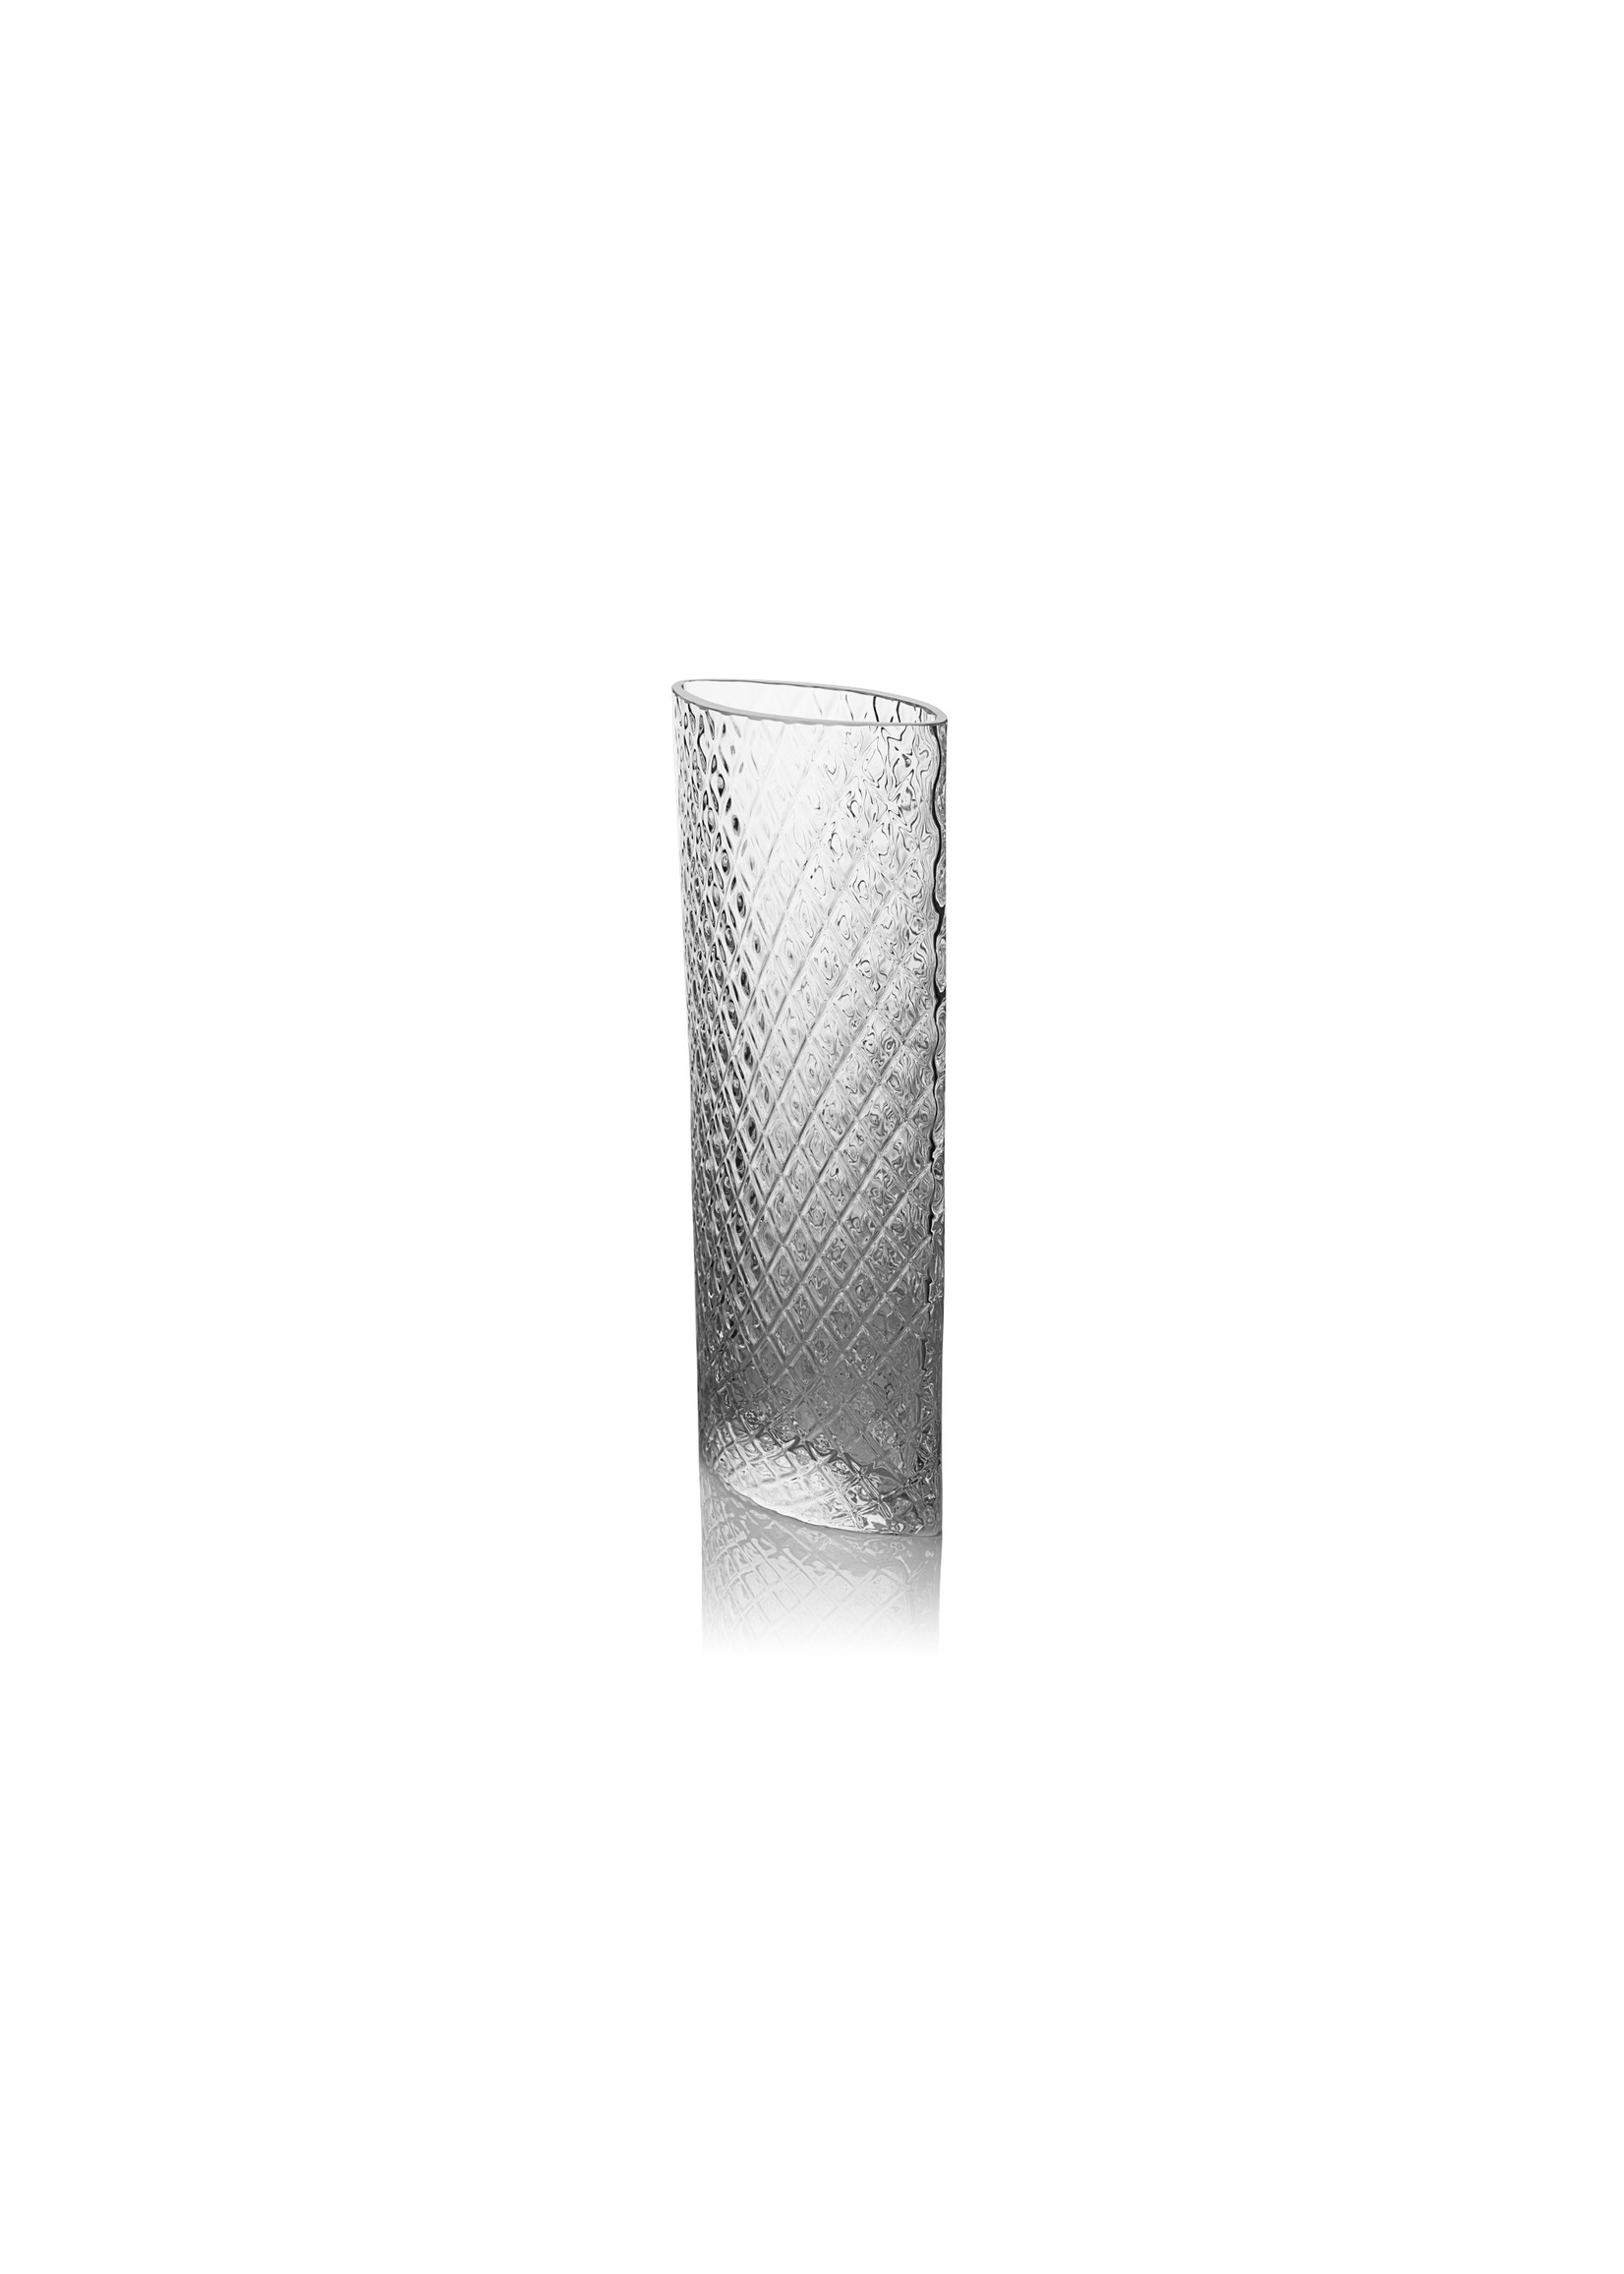 Skloglass Handgemaakt kristallen Lilie vaas 300mm - Kristal